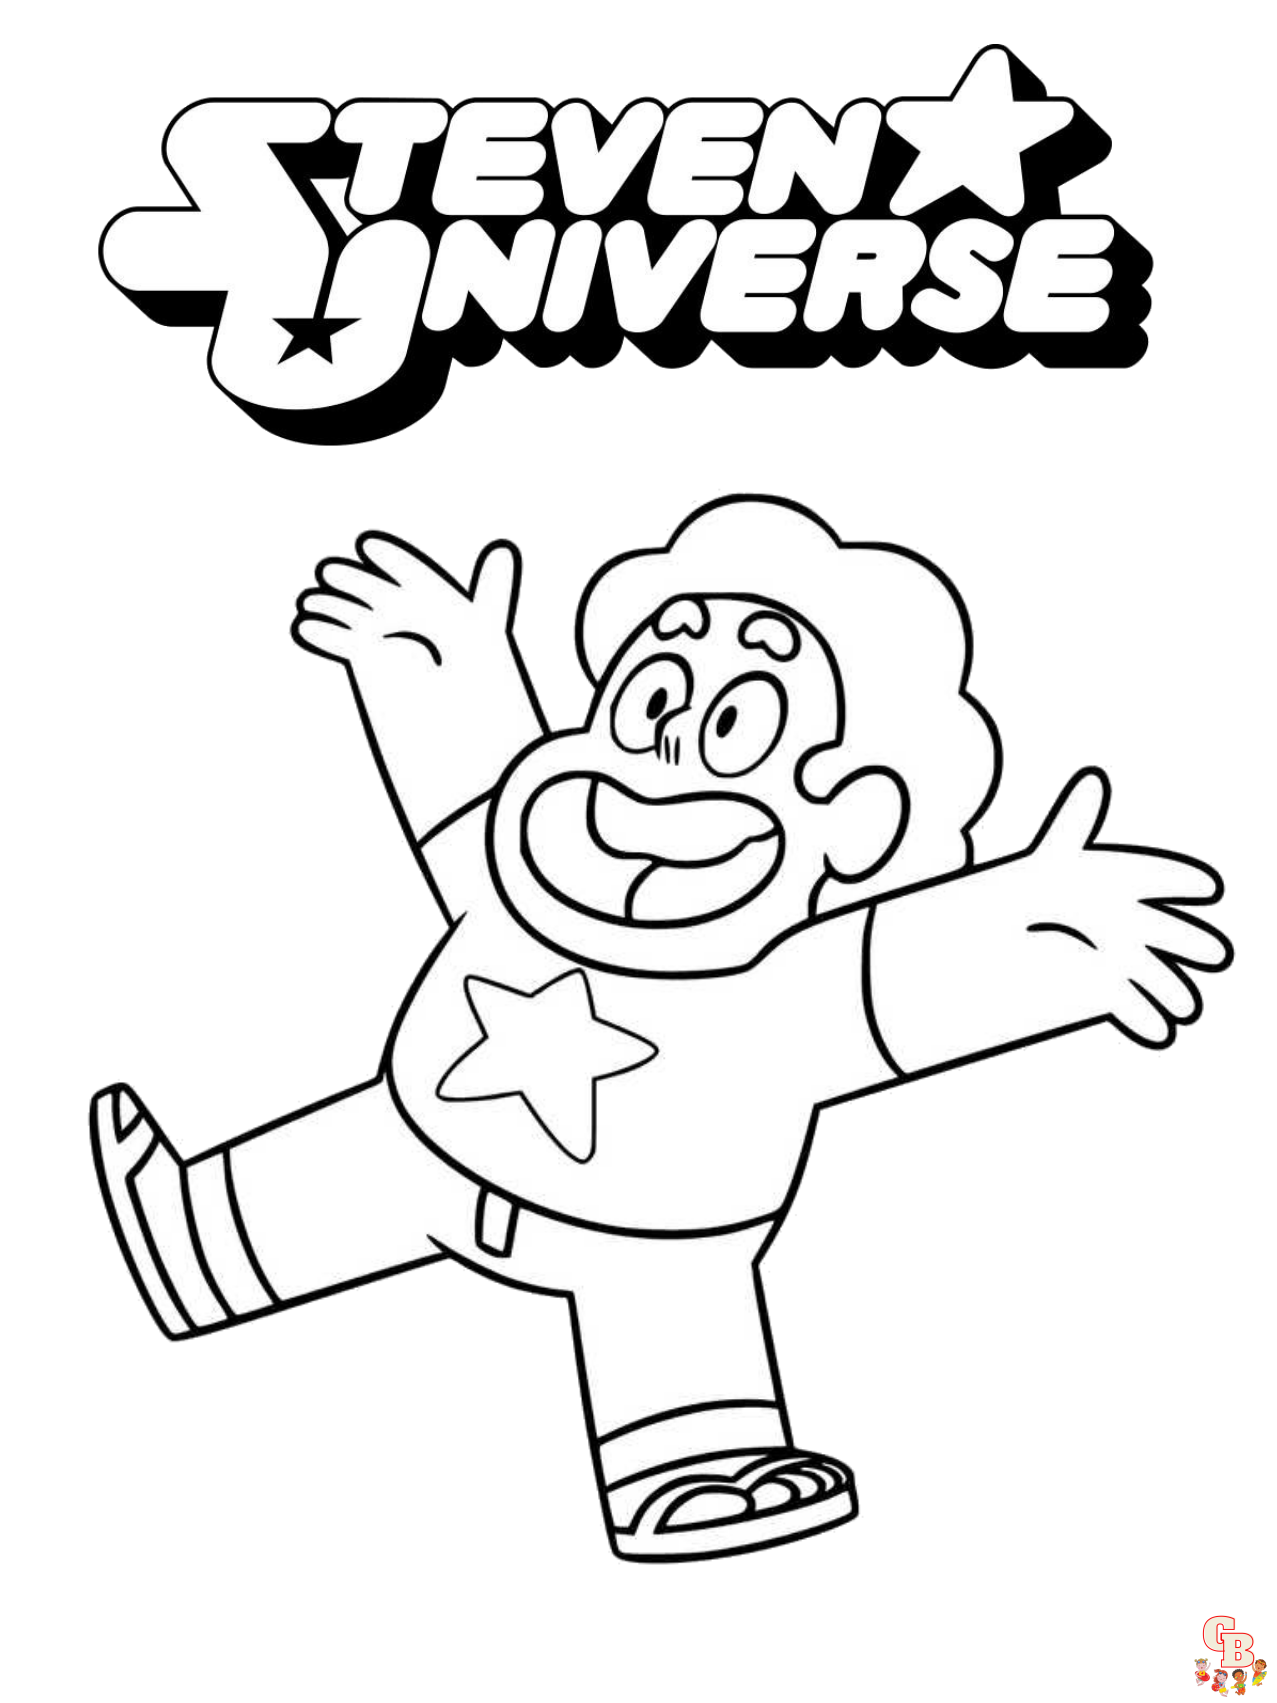 Steven Universe Coloring Pages 7